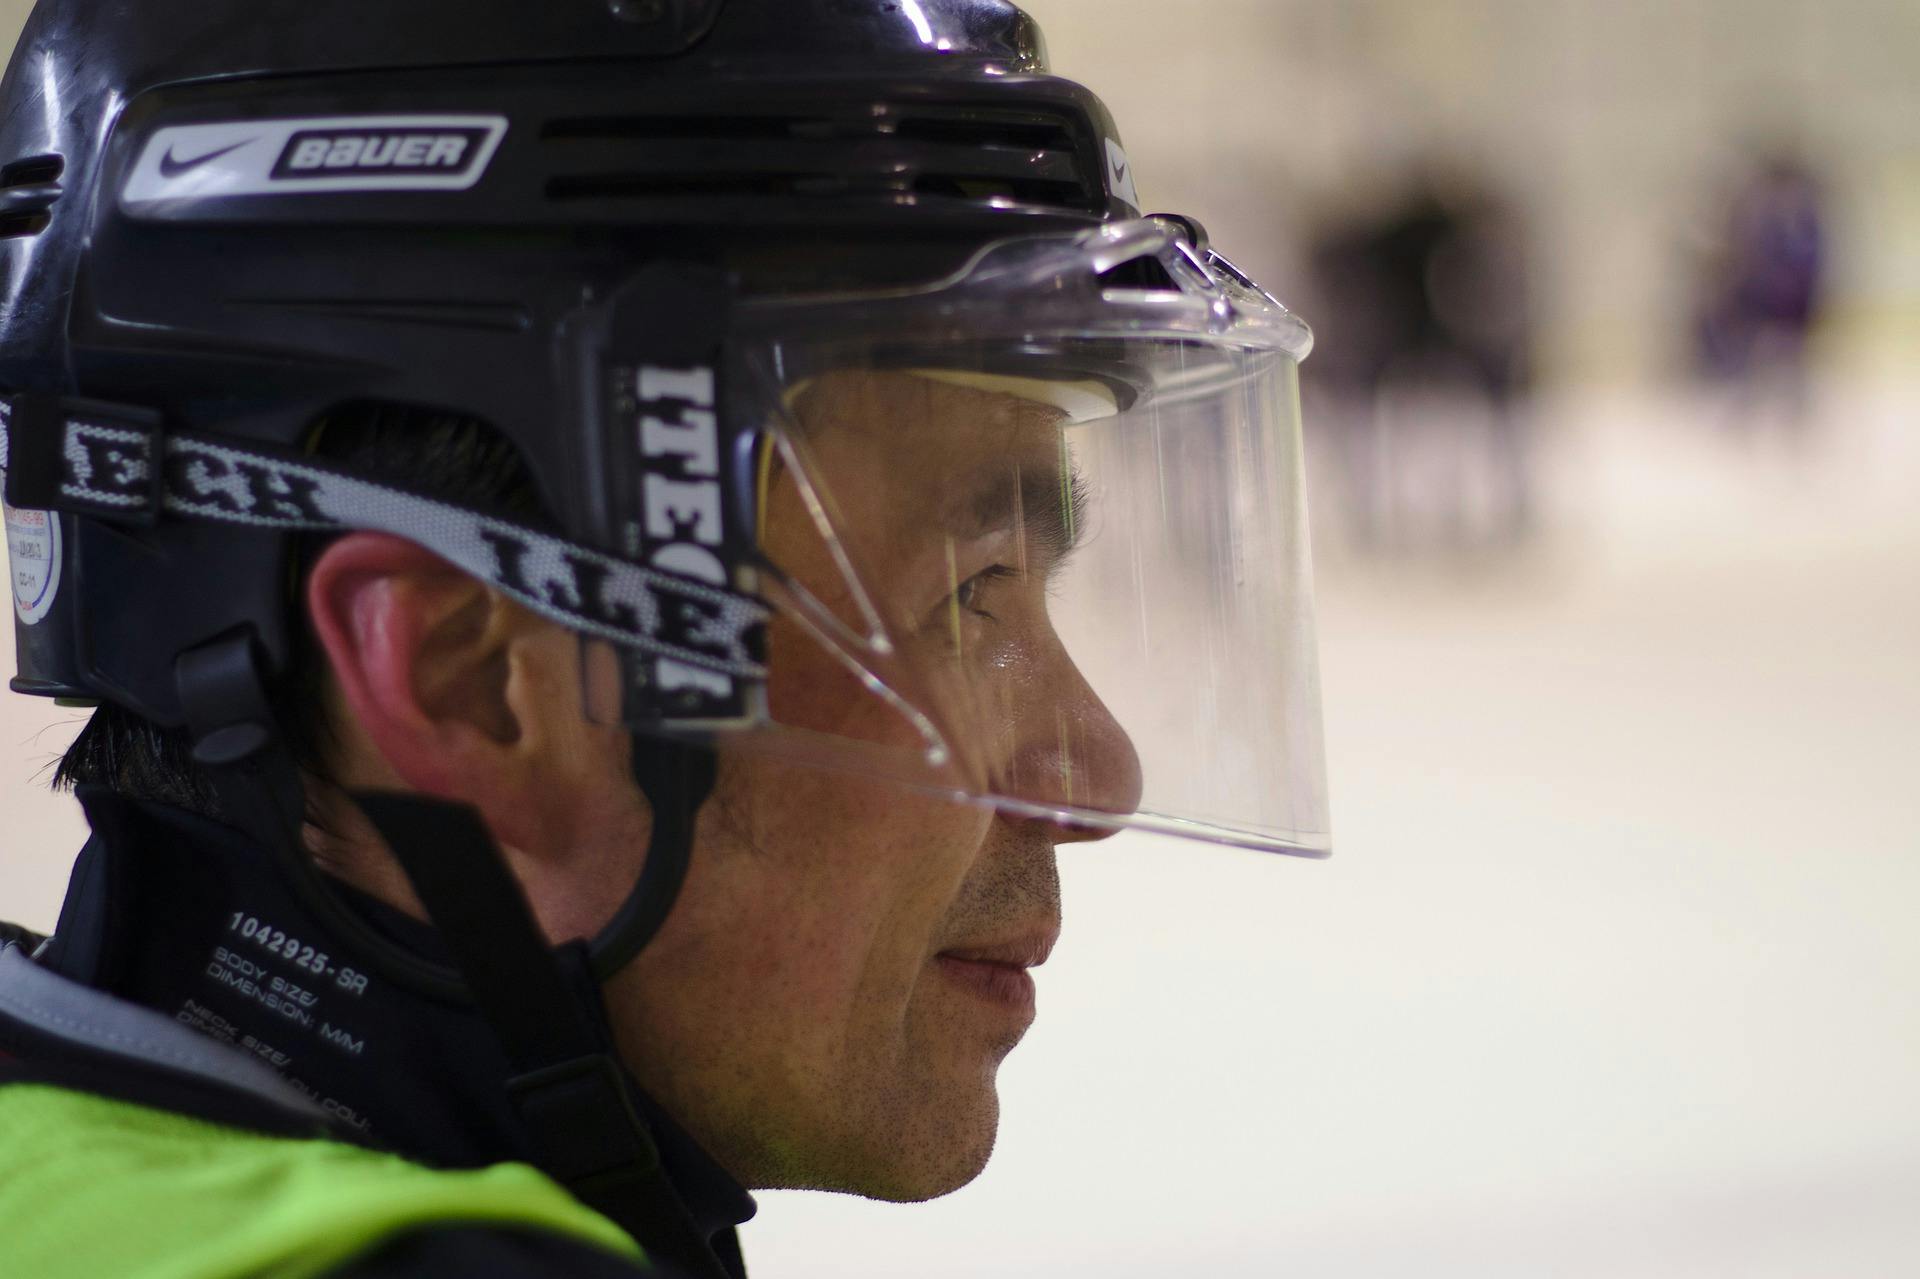 Ice hockey helmet with a face visor